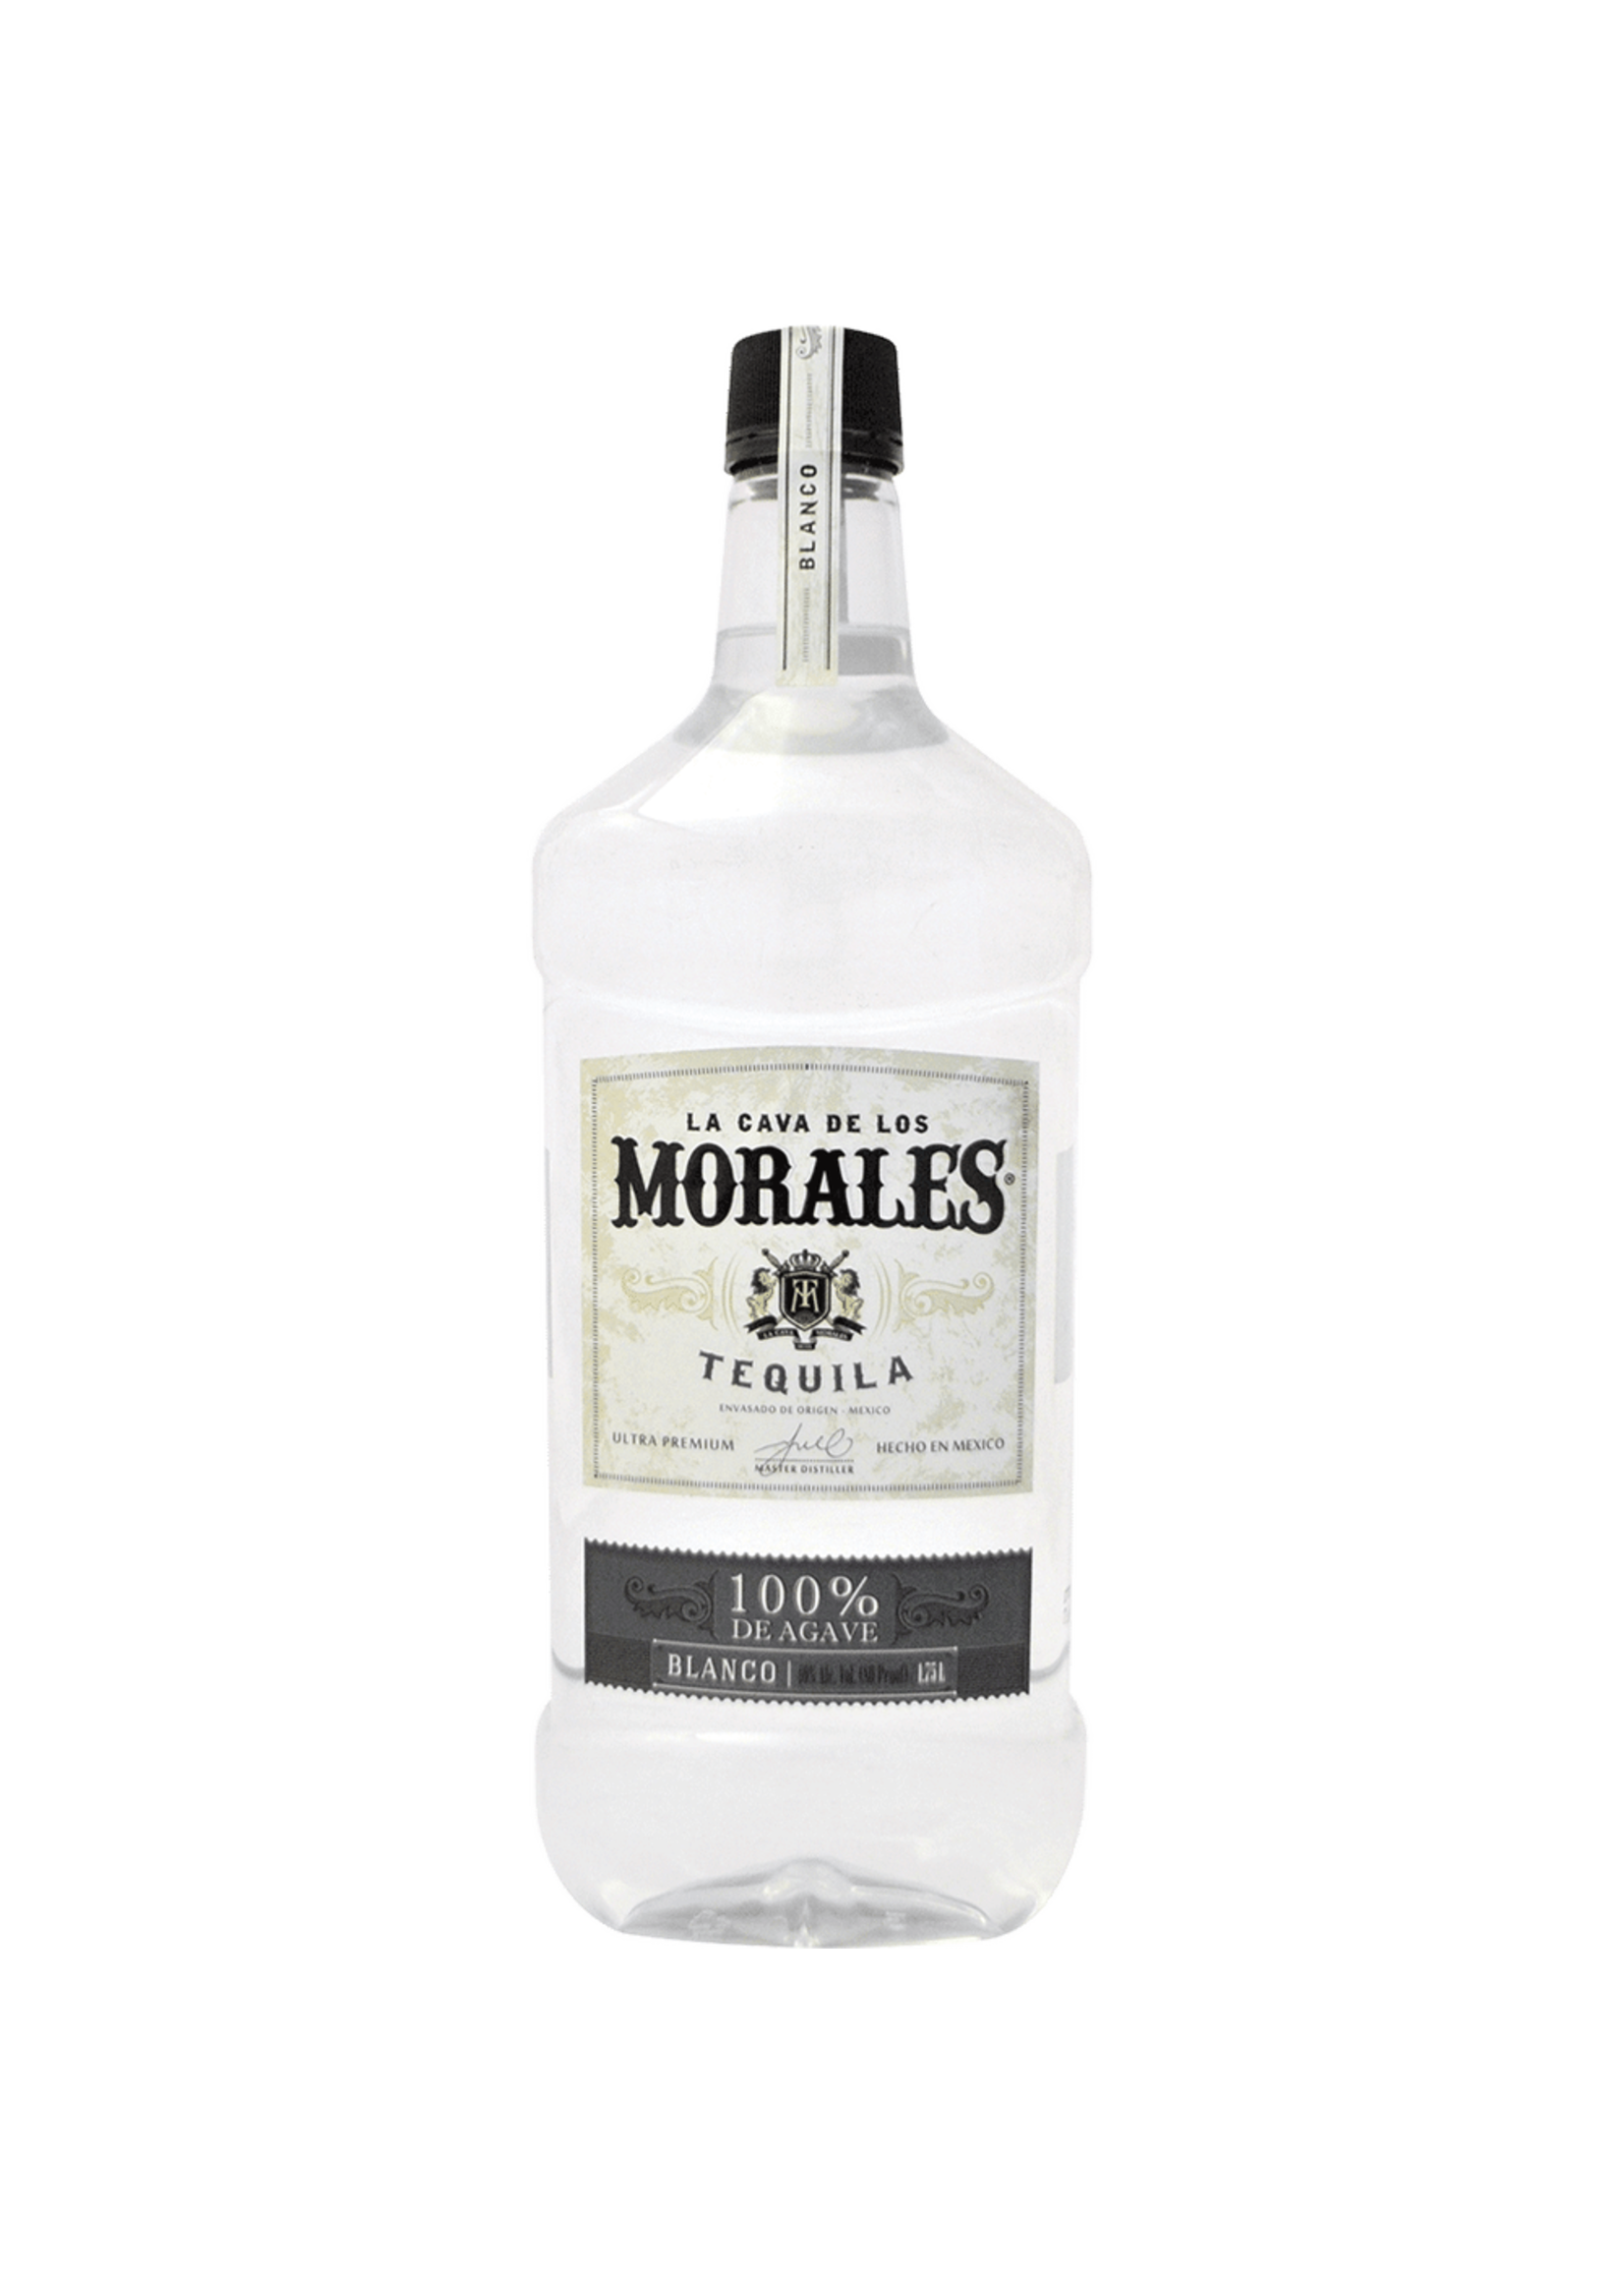 La Cava Morales Silver Tequila 80Proof 1.75 Ltr